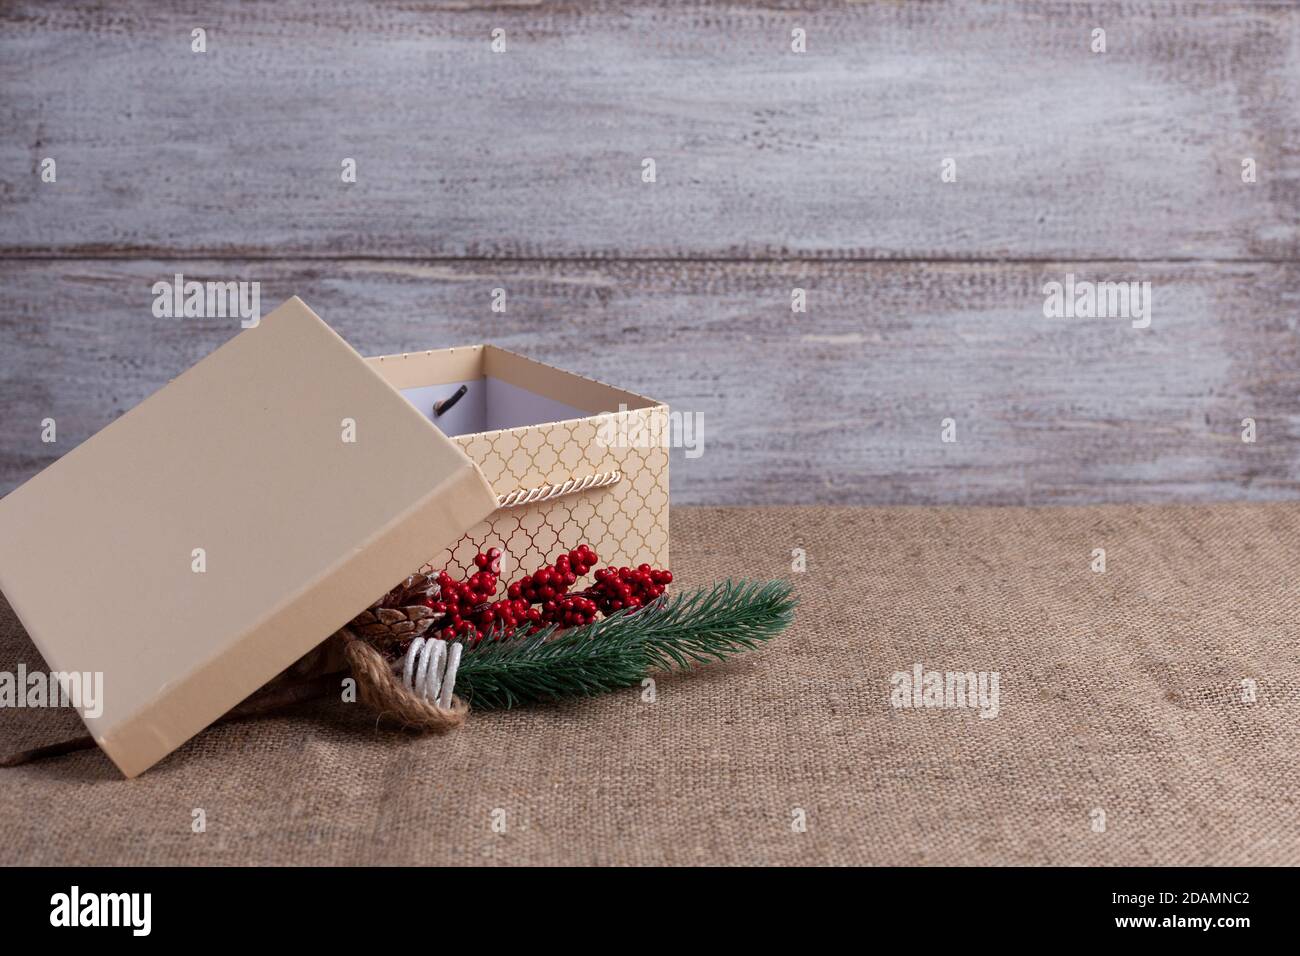 boîte cadeau beige carte postale avec couvercle ouvert et branche De sapin de Noël avec des décorations sur fond de bois et de toile de jute Banque D'Images